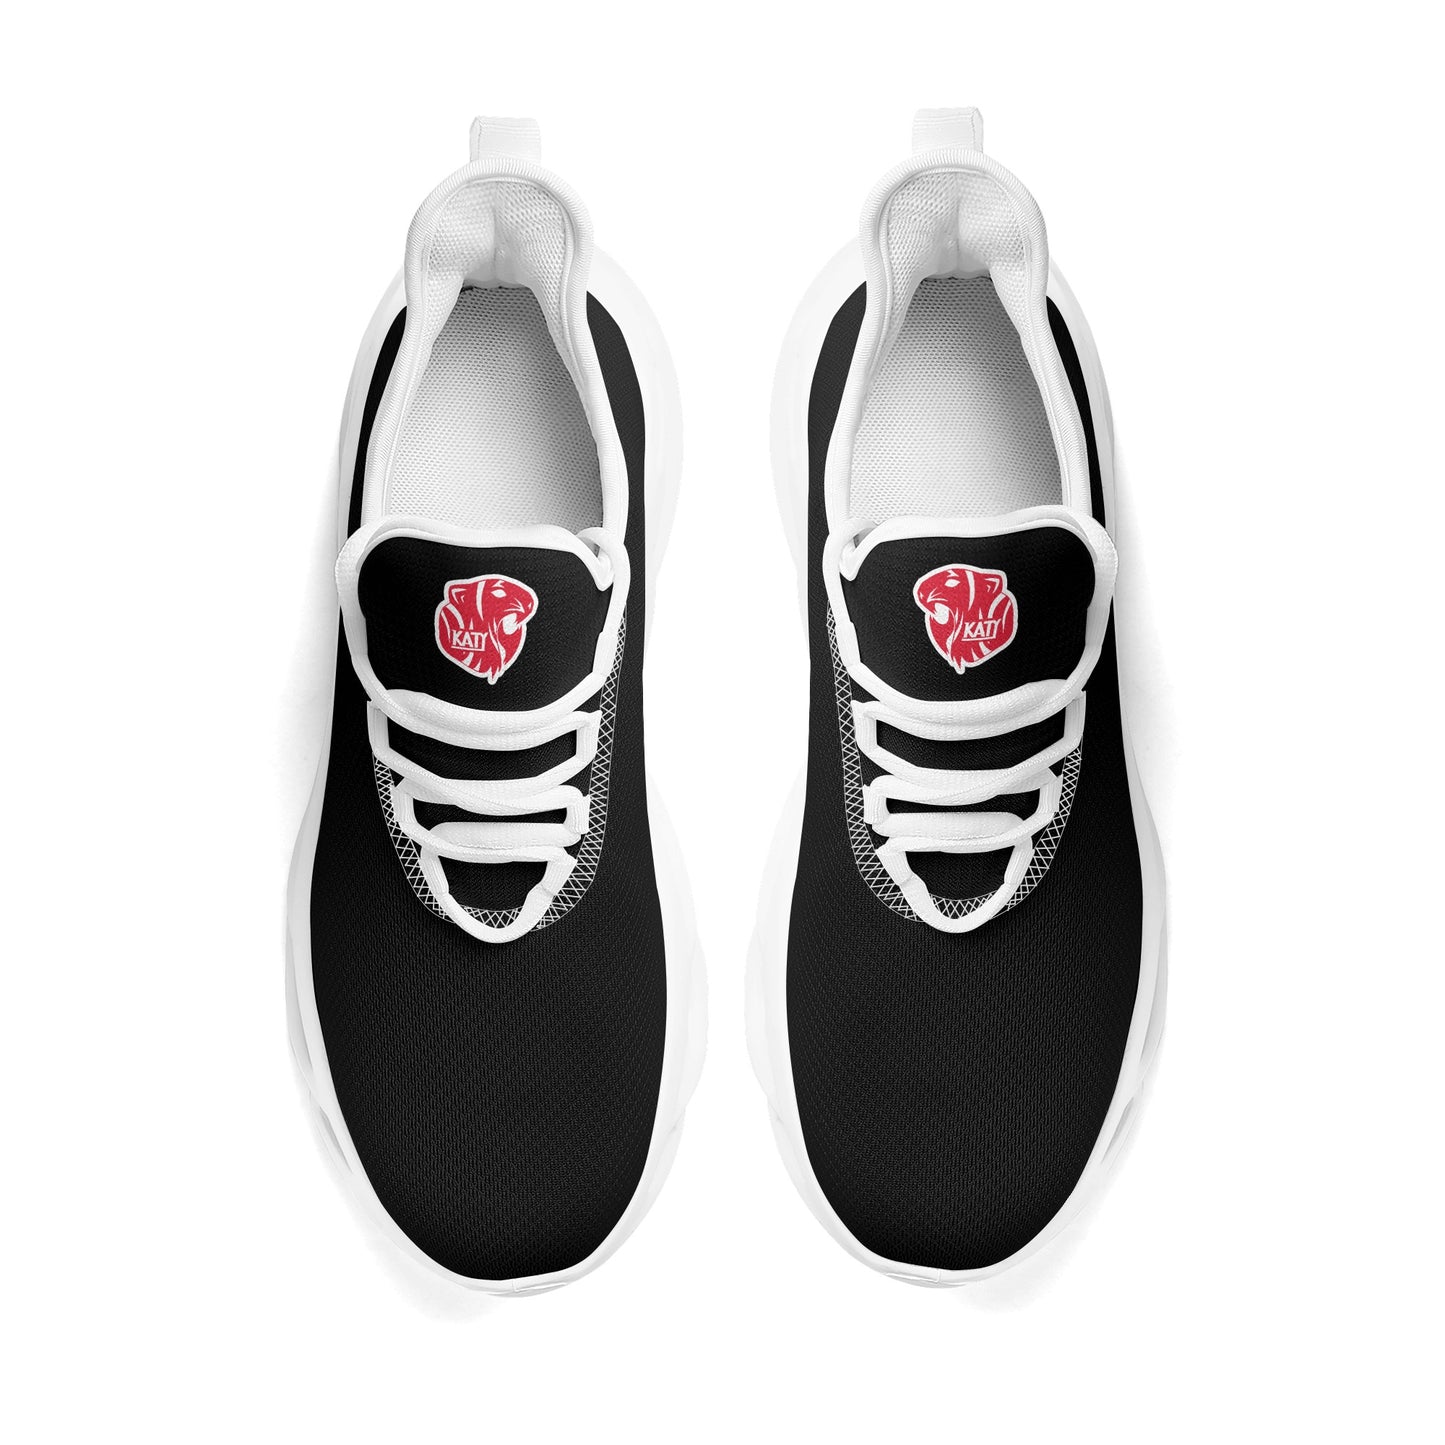 KHS - Men's Premium M-Sole Sneakers, Solid, 3 Color Options